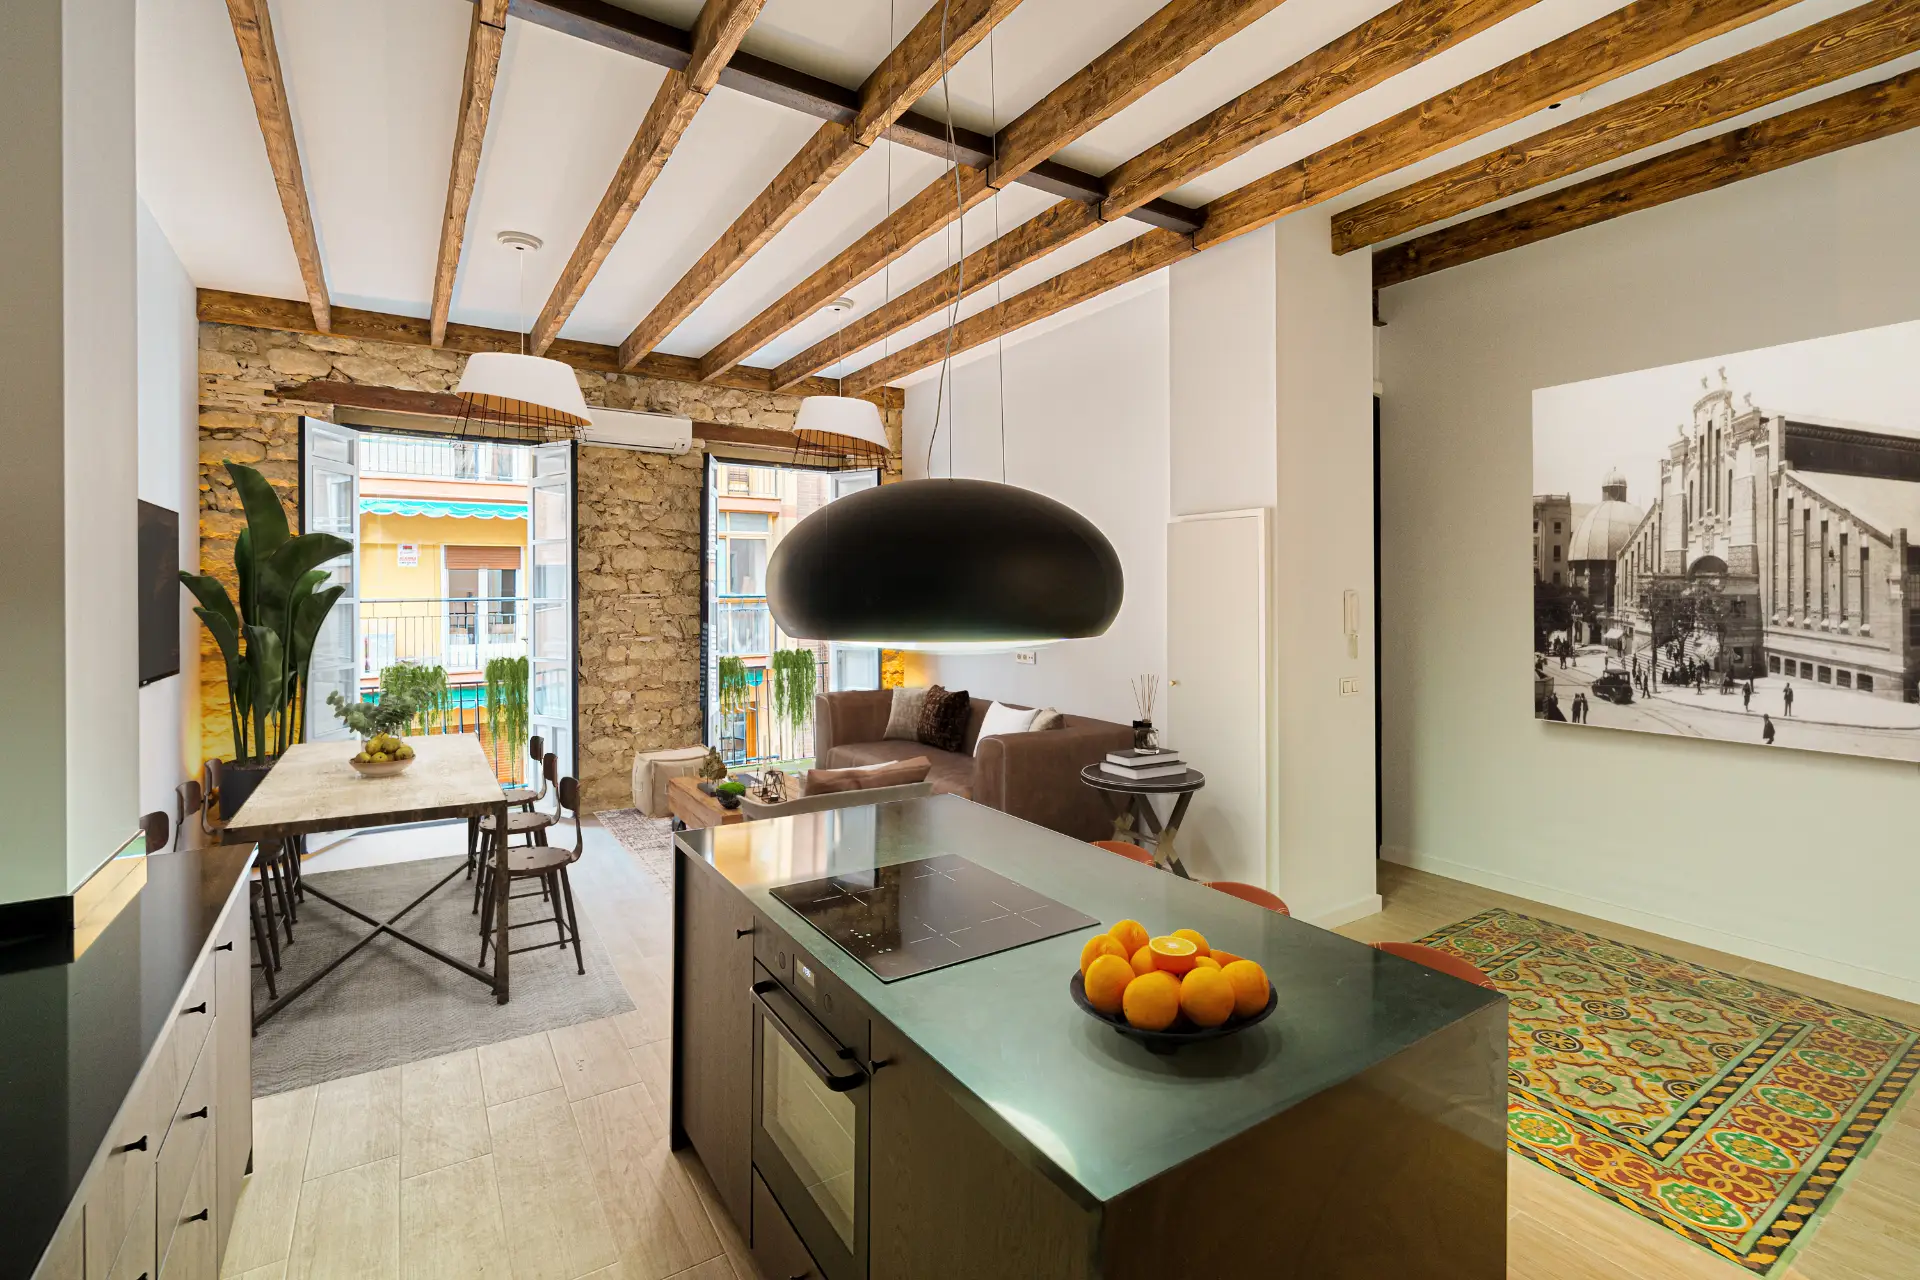 Kök och matplats med synliga träbjälkar och tegelvägg. Funktioner inkluderar en lång köksö, en stor taklampa och ett inramat fotografi på väggen.